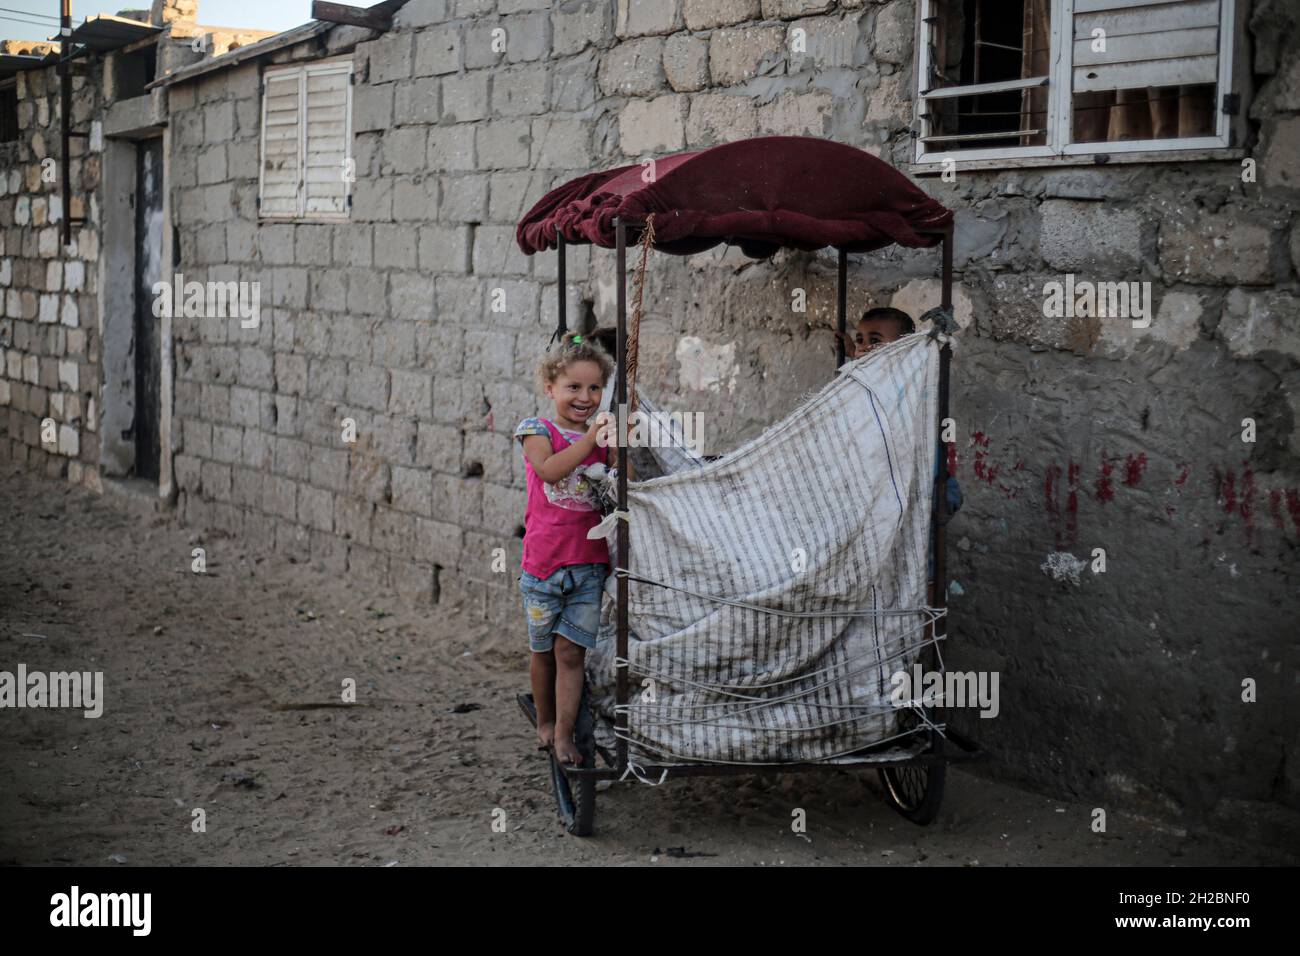 Journée internationale pour l'élimination de la pauvreté à Gaza.Les enfants palestiniens jouent devant leurs maisons dans un quartier pauvre de la périphérie de Khan Yunis, dans le sud de la bande de Gaza.Les enfants de Gaza vivent sous le poids de la pauvreté et du blocus israélien imposé à la bande pendant des années.Palestine. Banque D'Images